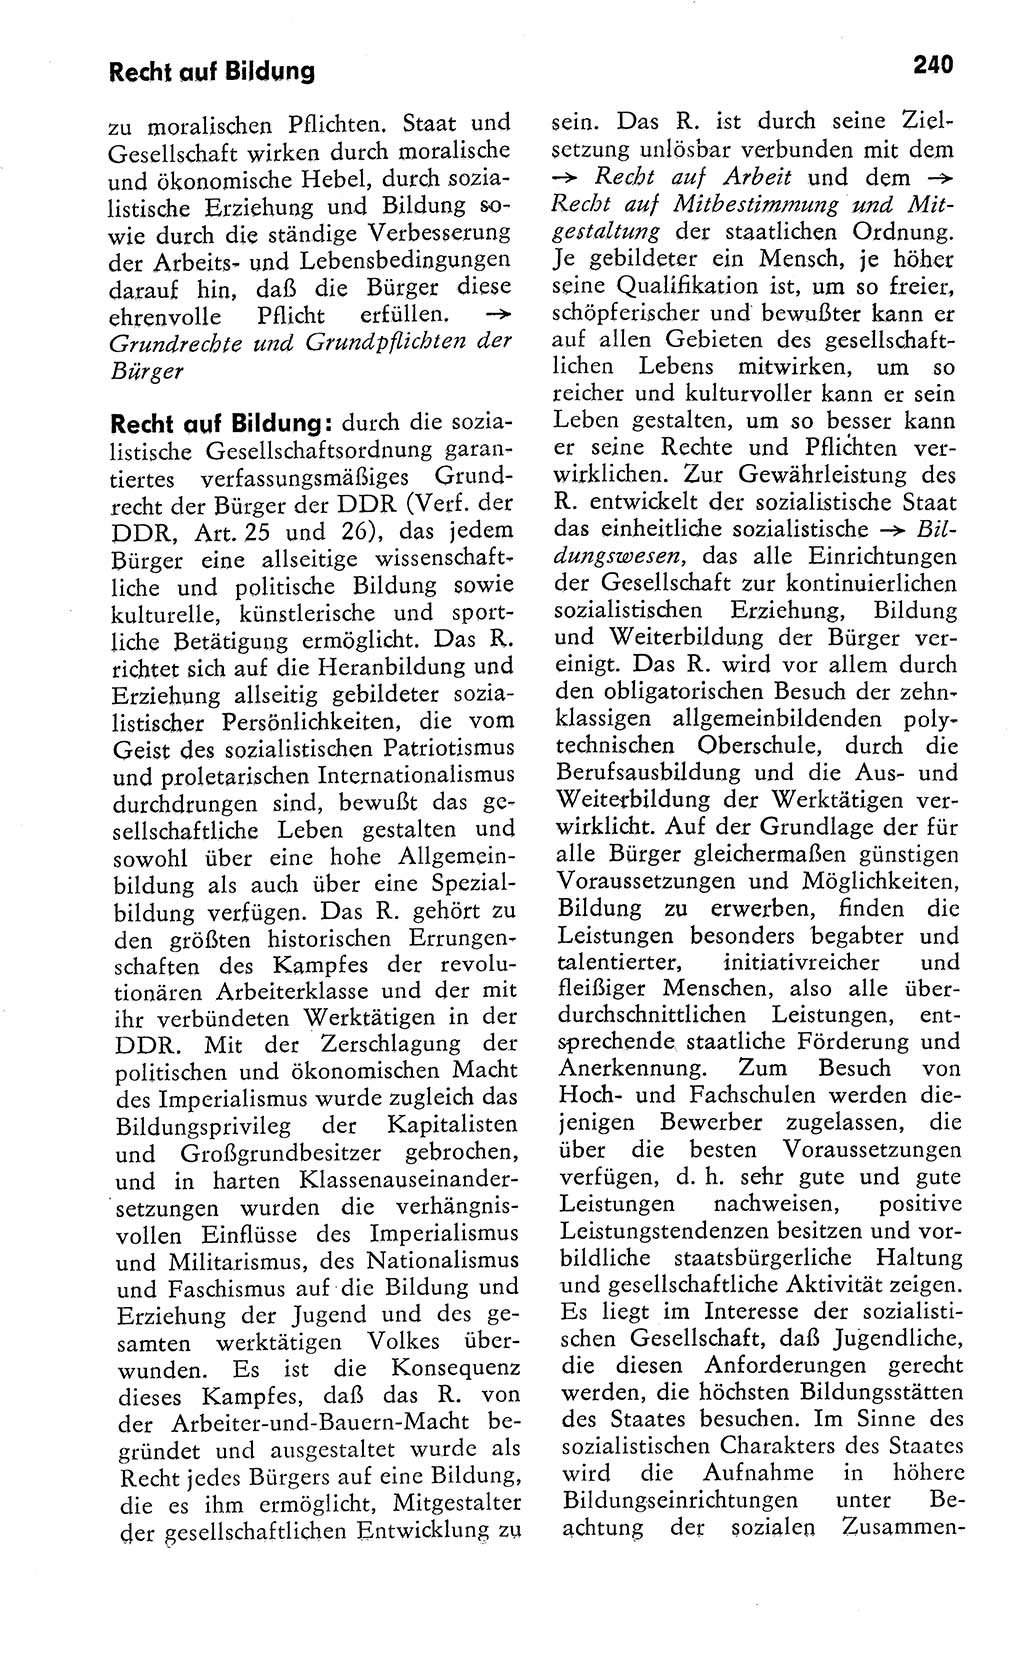 Wörterbuch zum sozialistischen Staat [Deutsche Demokratische Republik (DDR)] 1974, Seite 240 (Wb. soz. St. DDR 1974, S. 240)